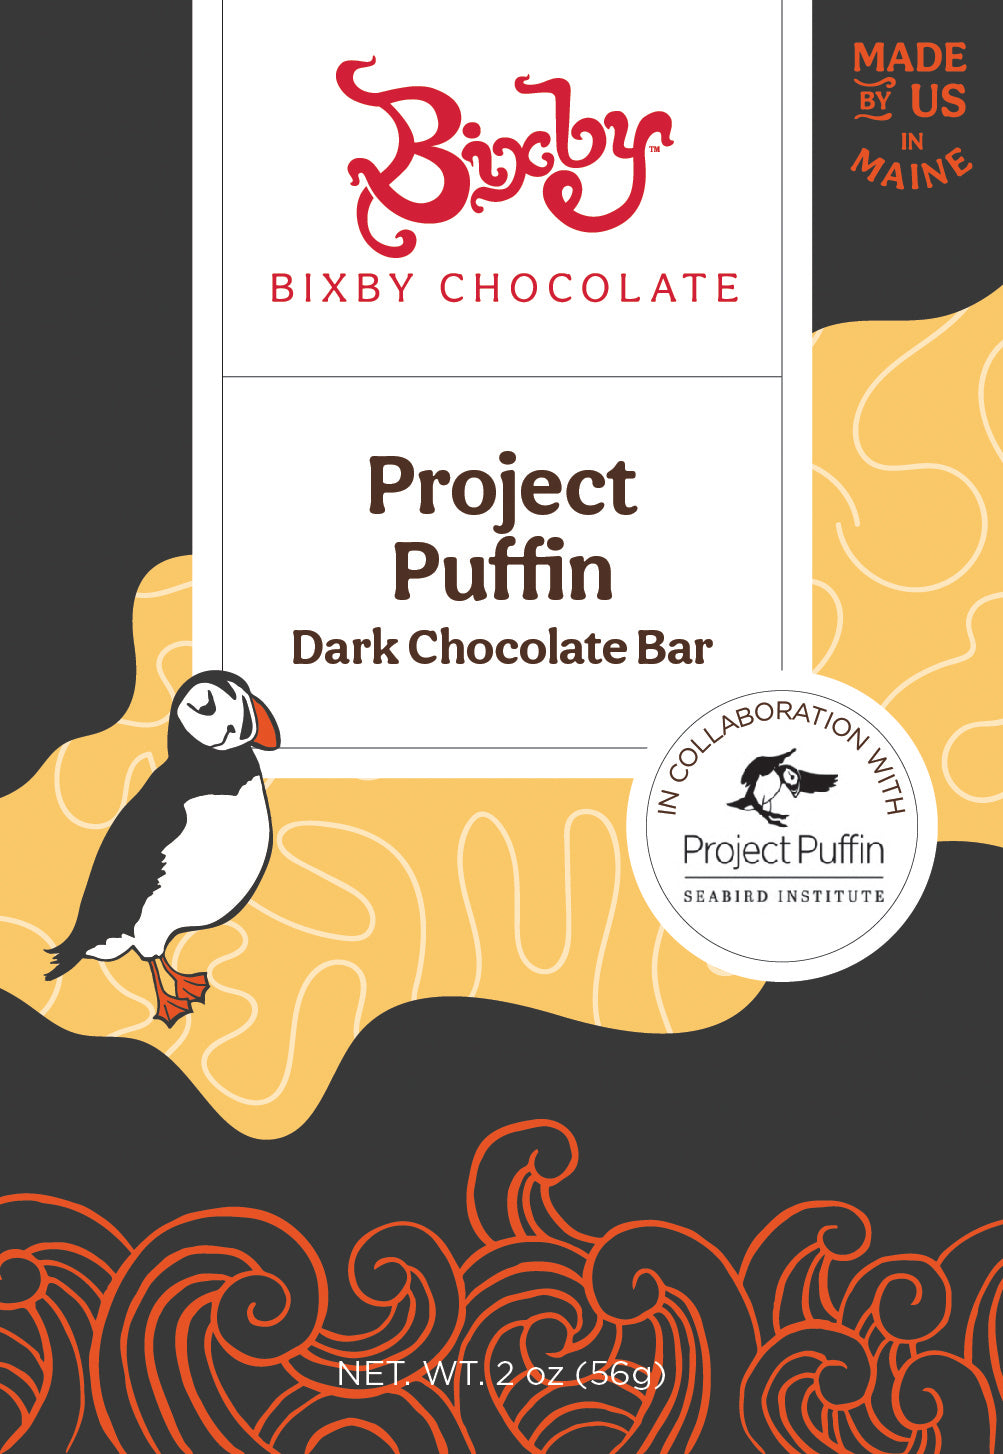 Organic Project Puffin 70% Dark Chocolate Bar